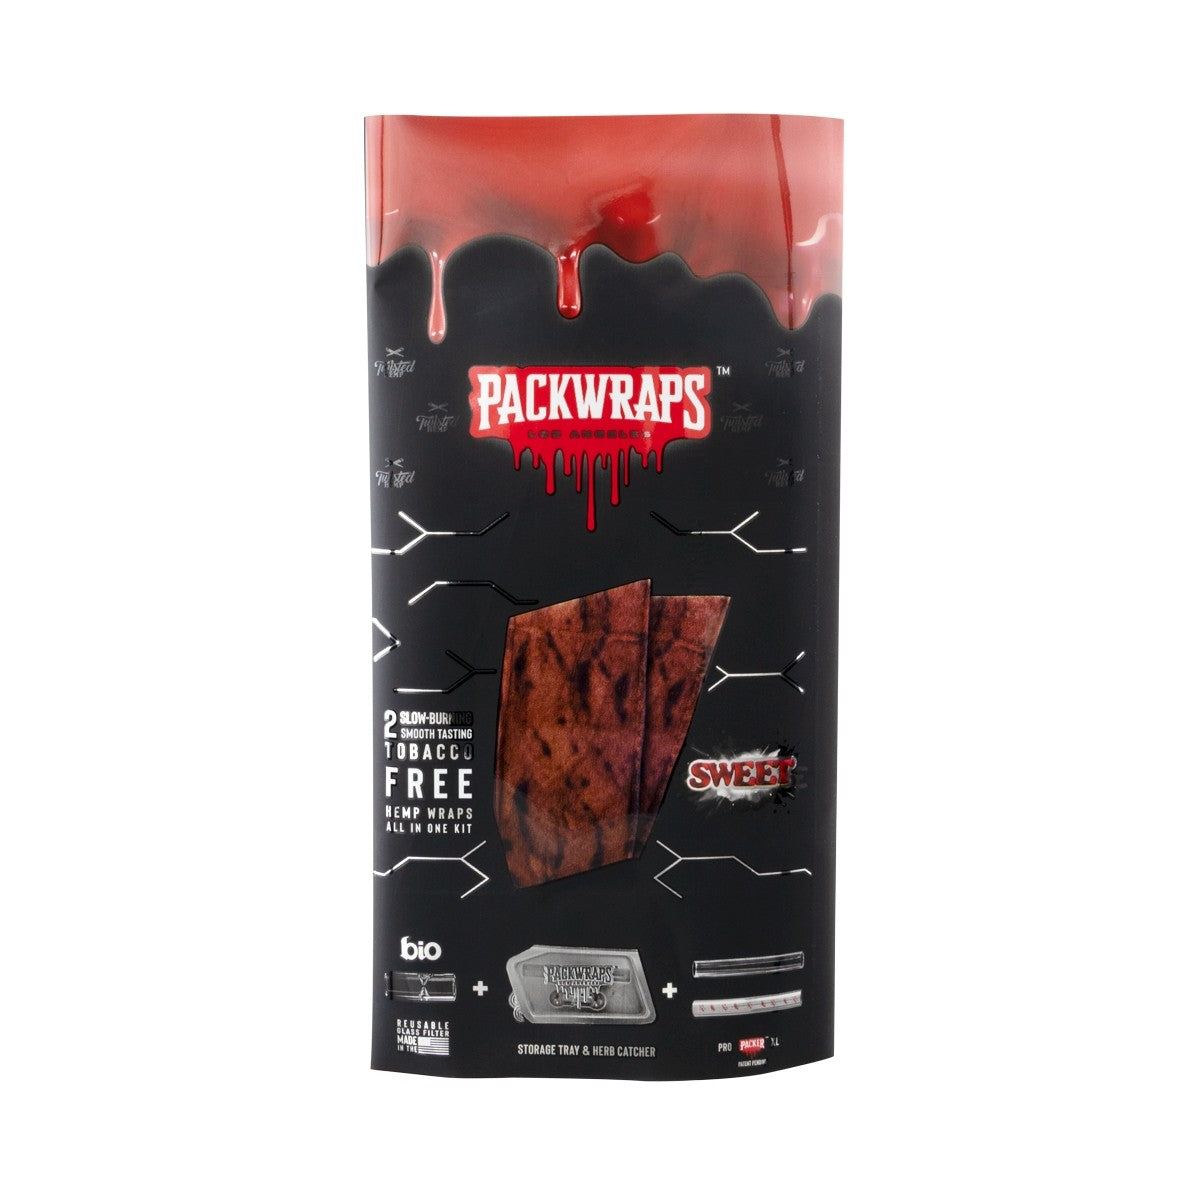 PACKWRAPS - Sweet Hemp Wraps Kit